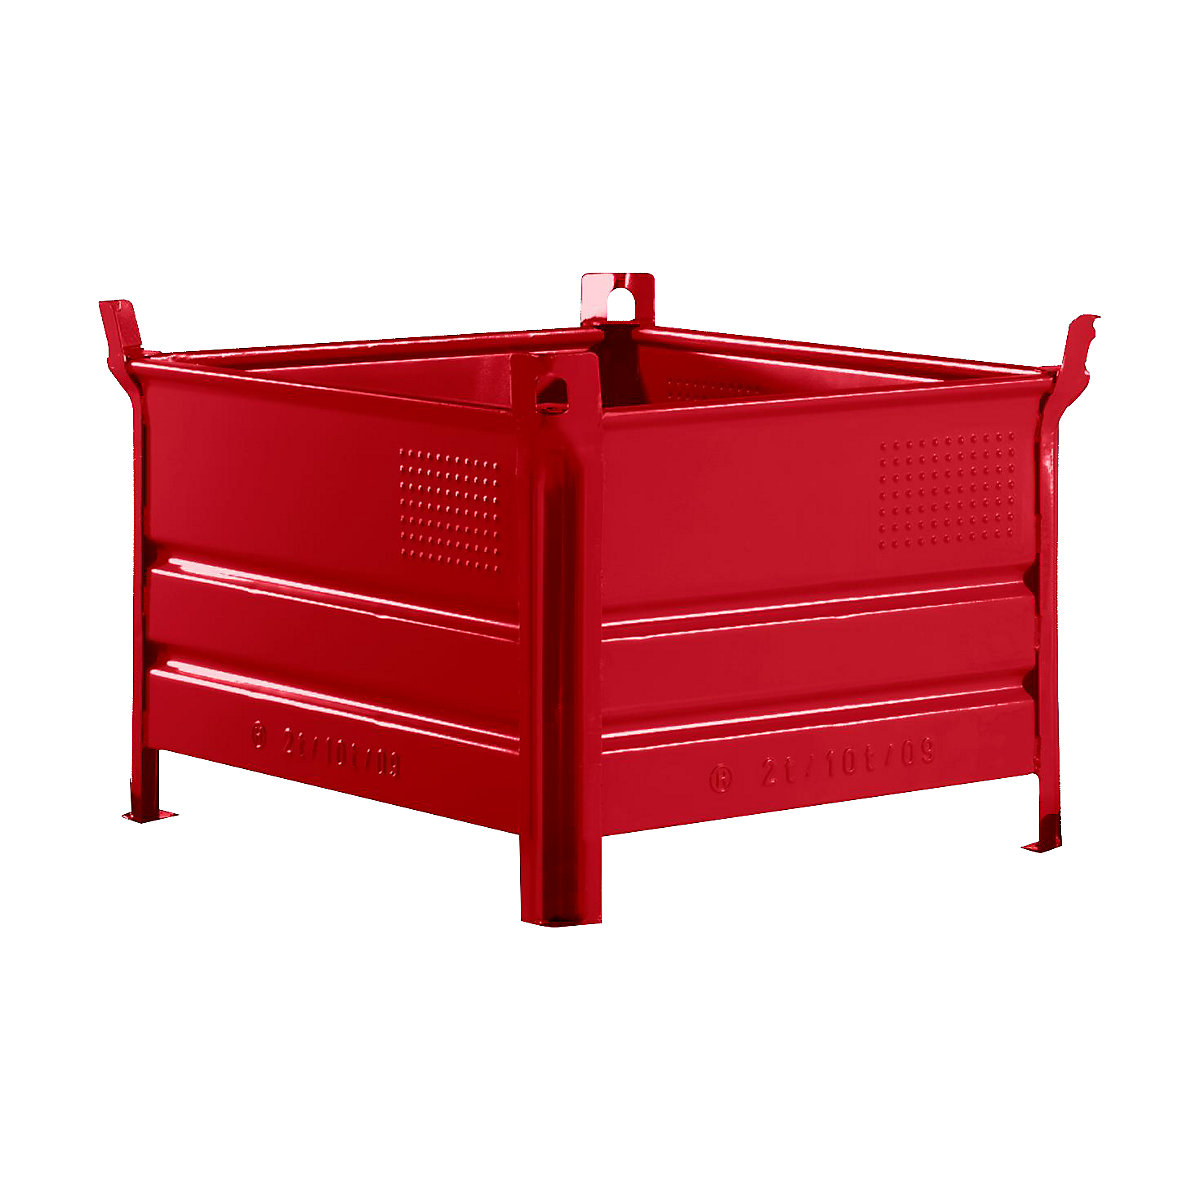 Pojemnik do ustawiania w stos z pełnymi ściankami – Heson, szer. x dł. 800 x 1000 mm, nośność 2000 kg, czerwony, od 10 szt.-5